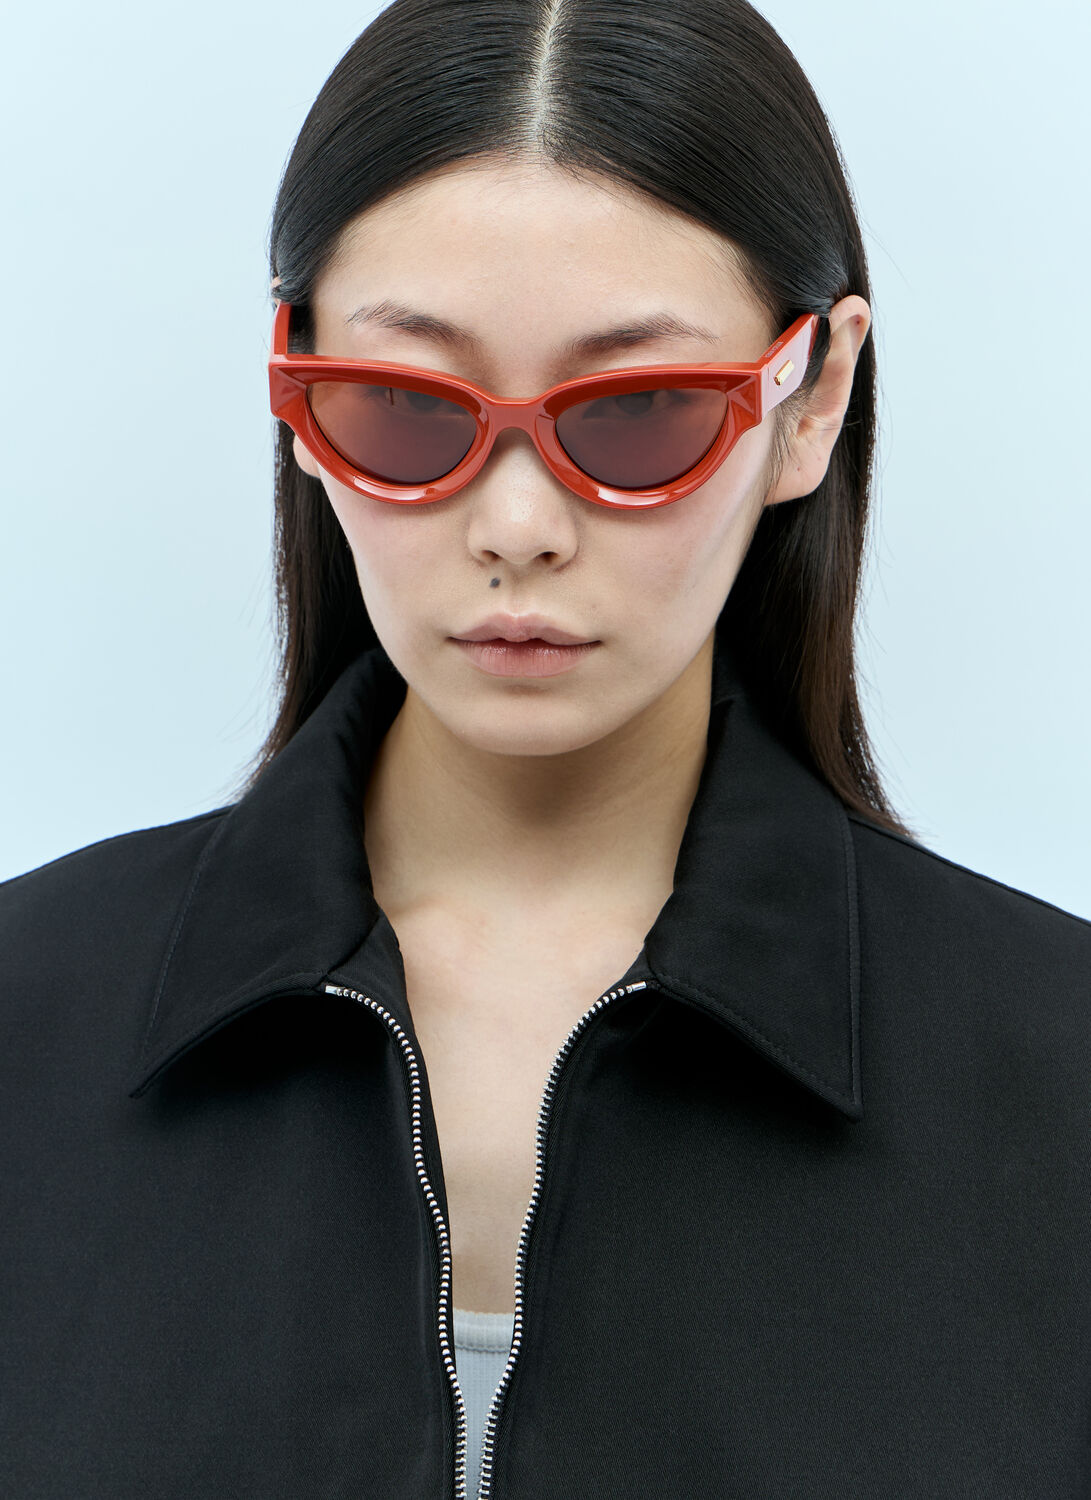 Shop Bottega Veneta Sharp Cat Eye Sunglasses In Orange